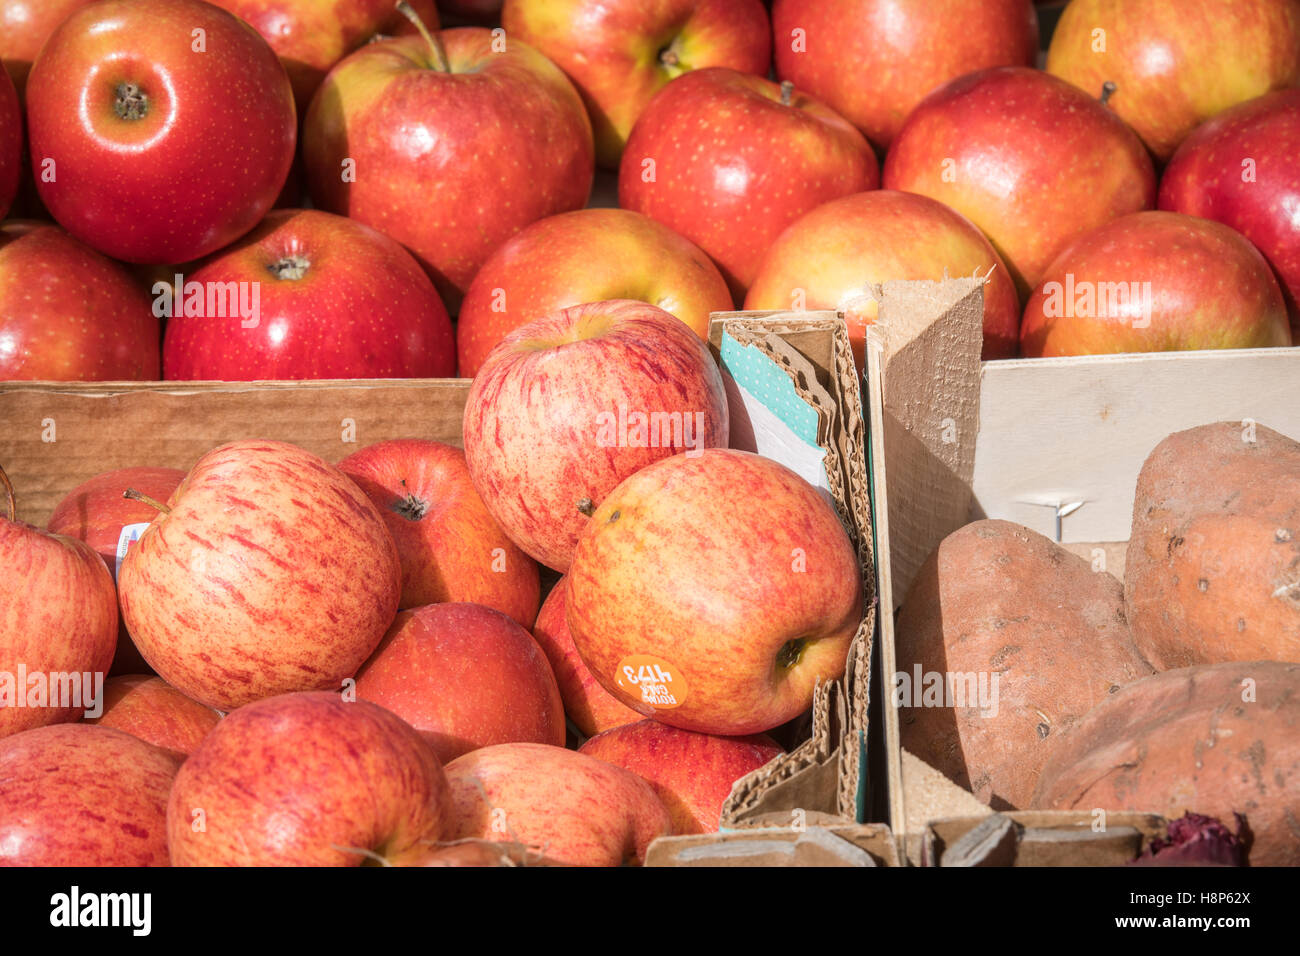 Großbritannien, England, Yorkshire, Richmond - Äpfel und anderen Produkten für den Verkauf in einem lokalen Outdoor-Markt in der Stadt Richmond gelegen Stockfoto